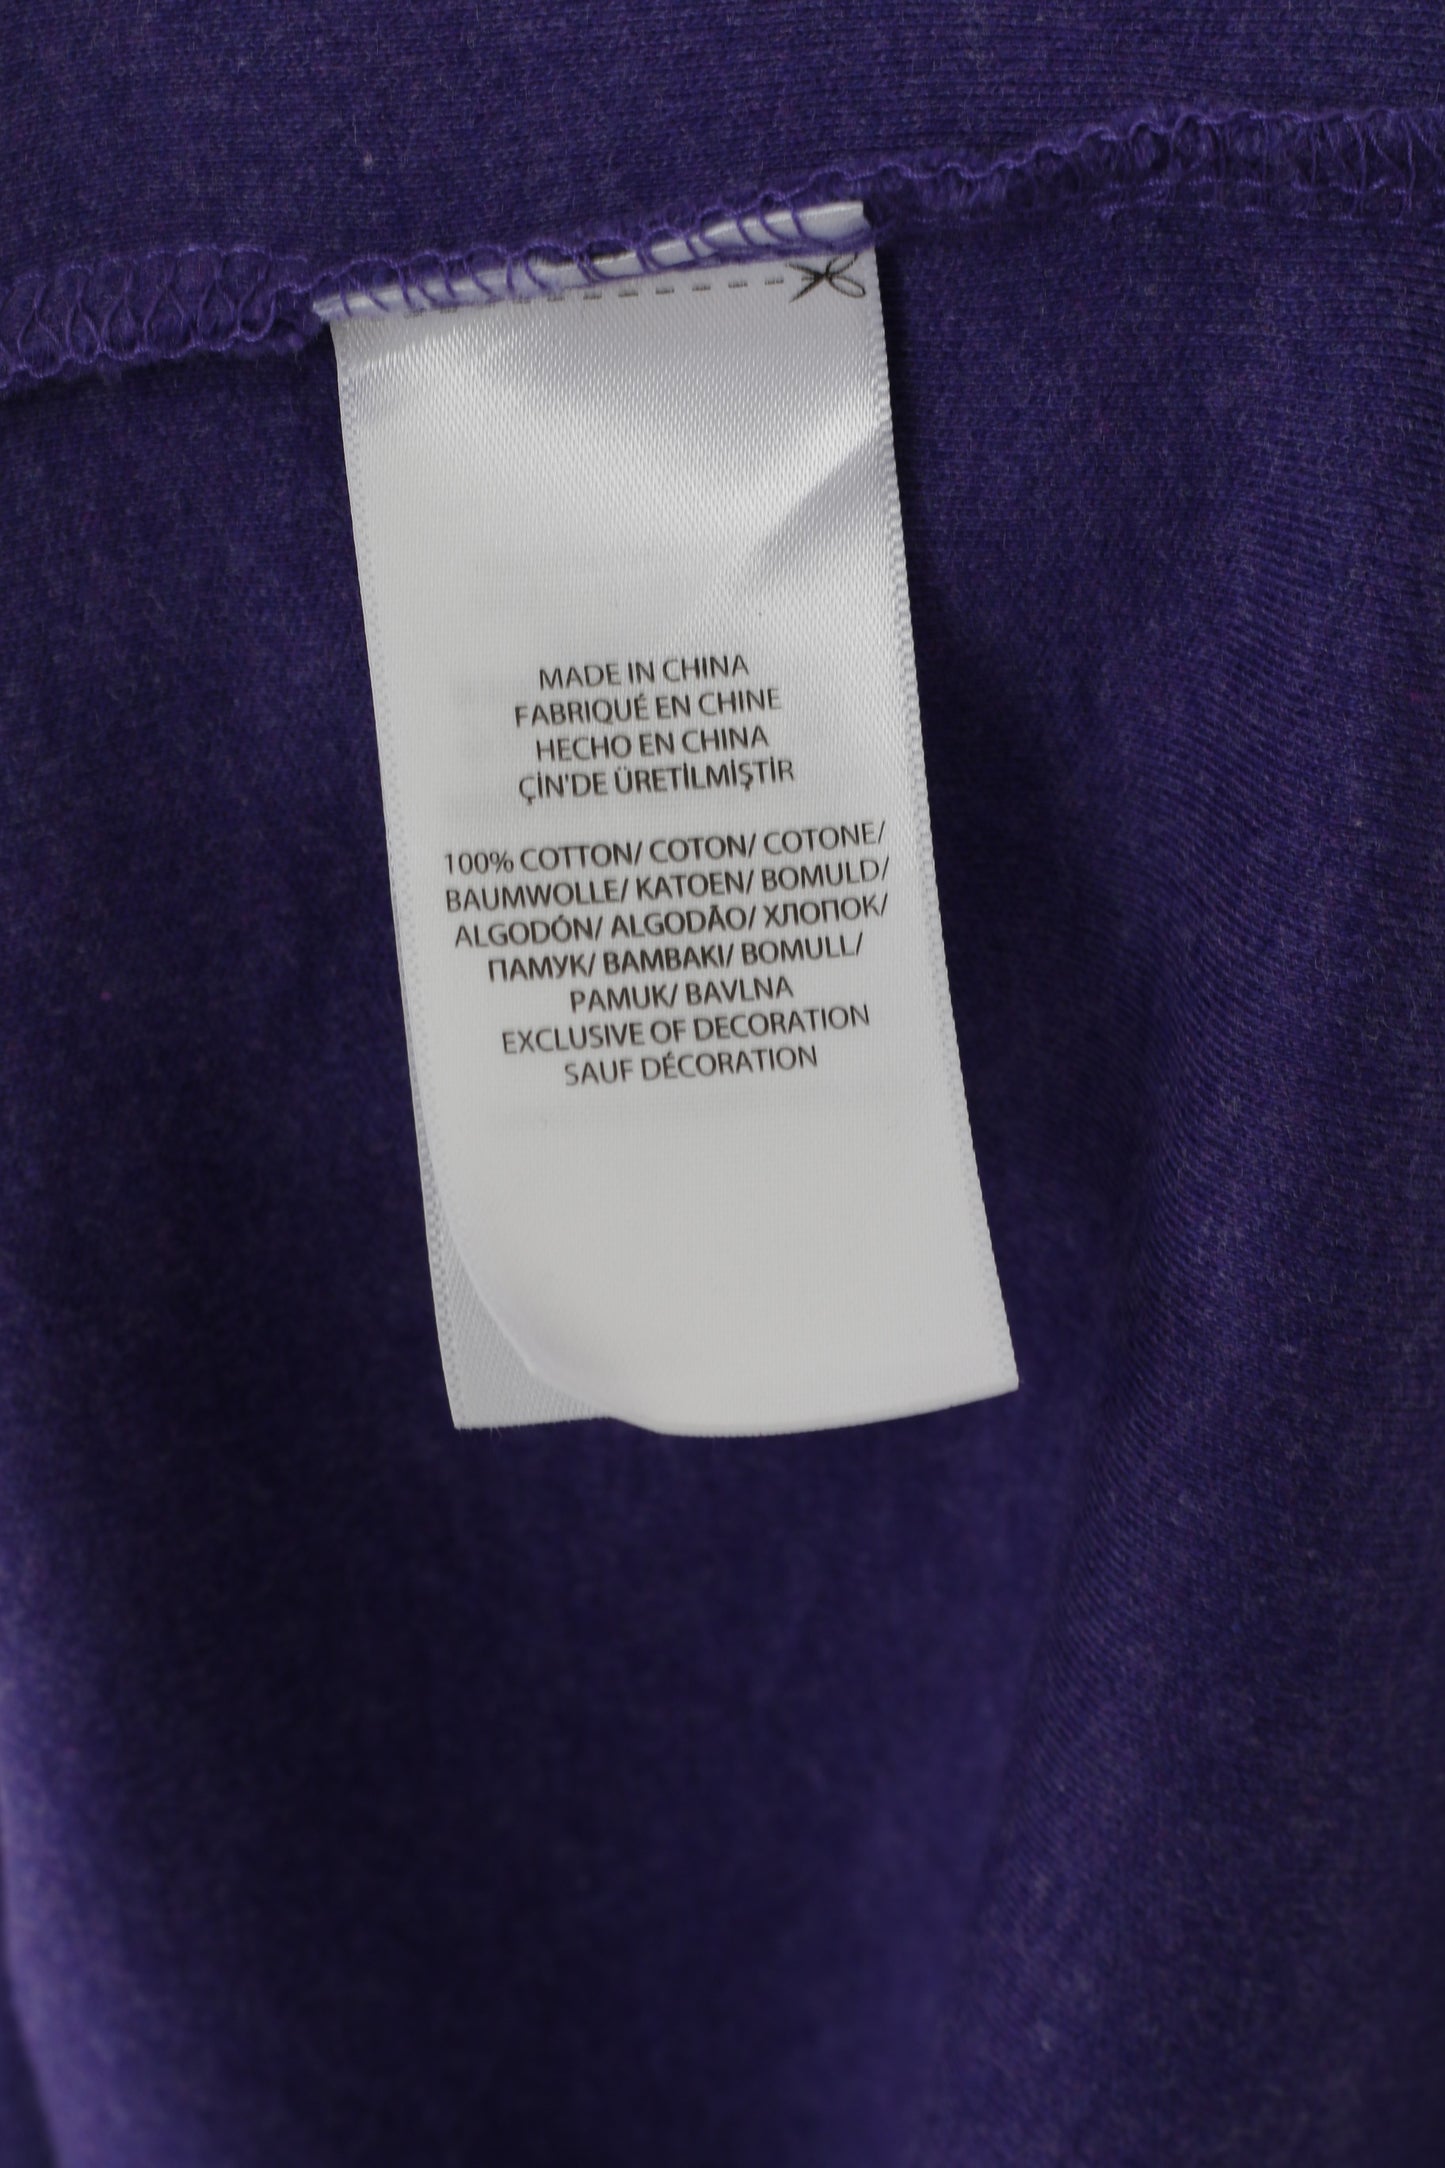 POLO Ralph Lauren Men L Polo Shirt Purple Cotton Stertch Short Sleeve Plain Top